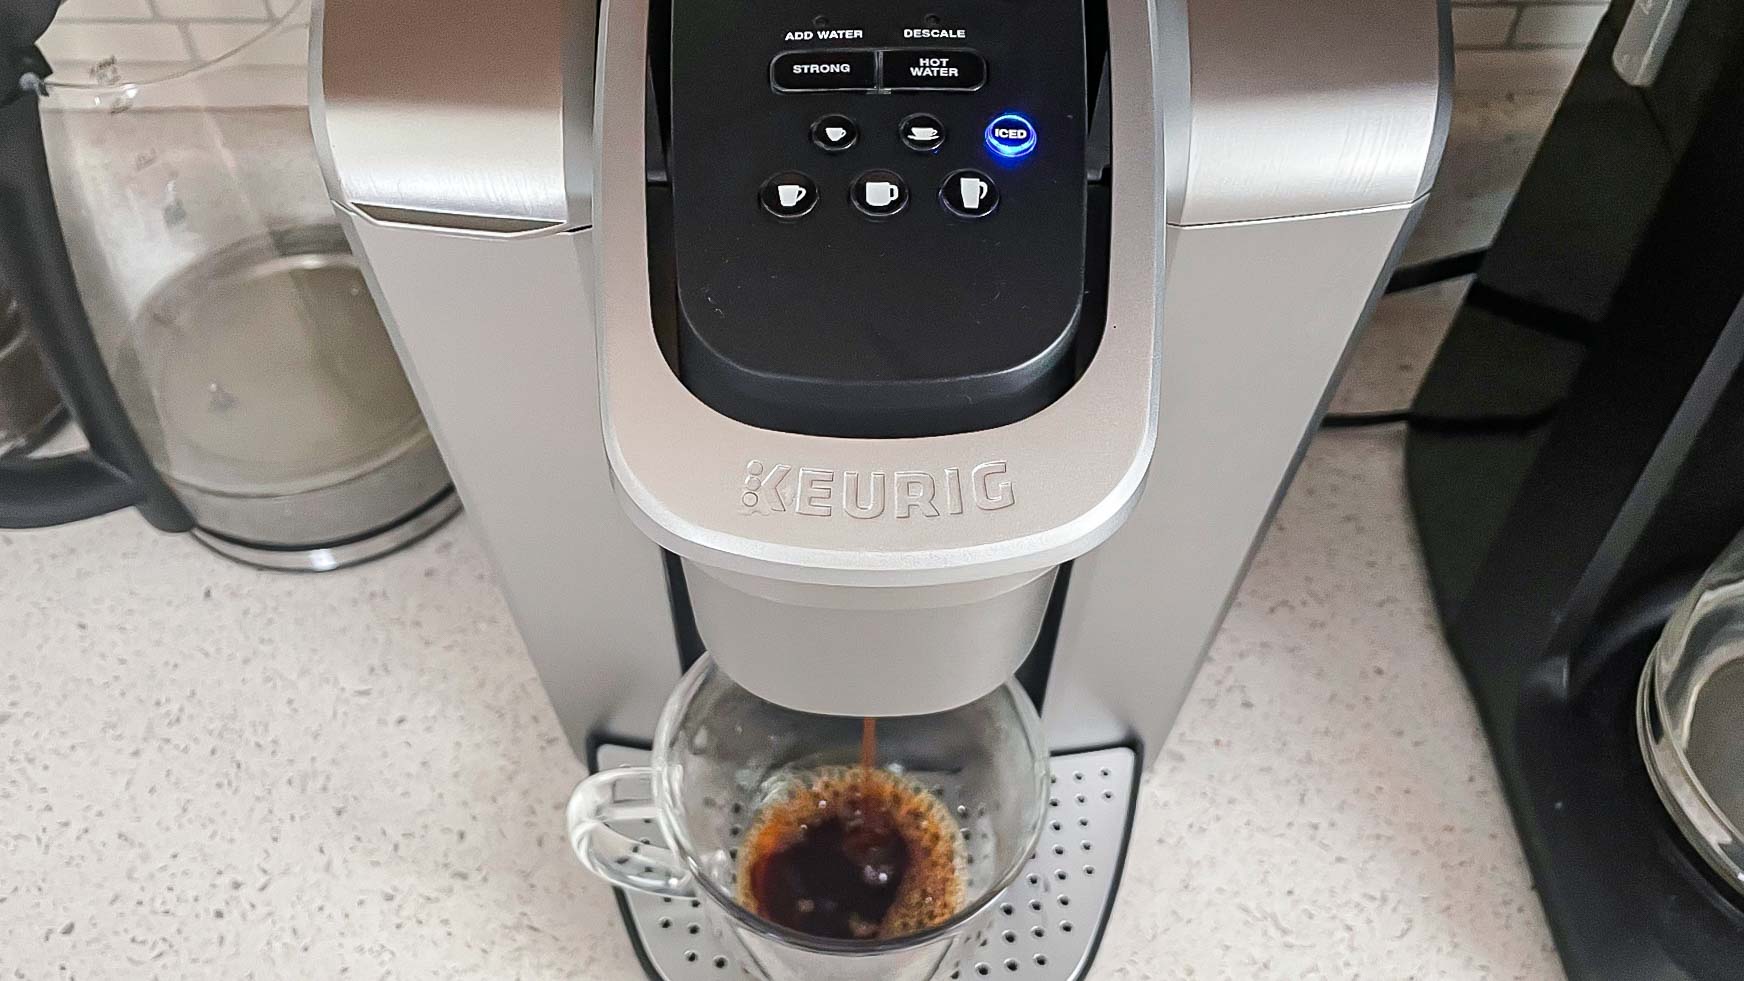 Keurig K-Elite making coffee